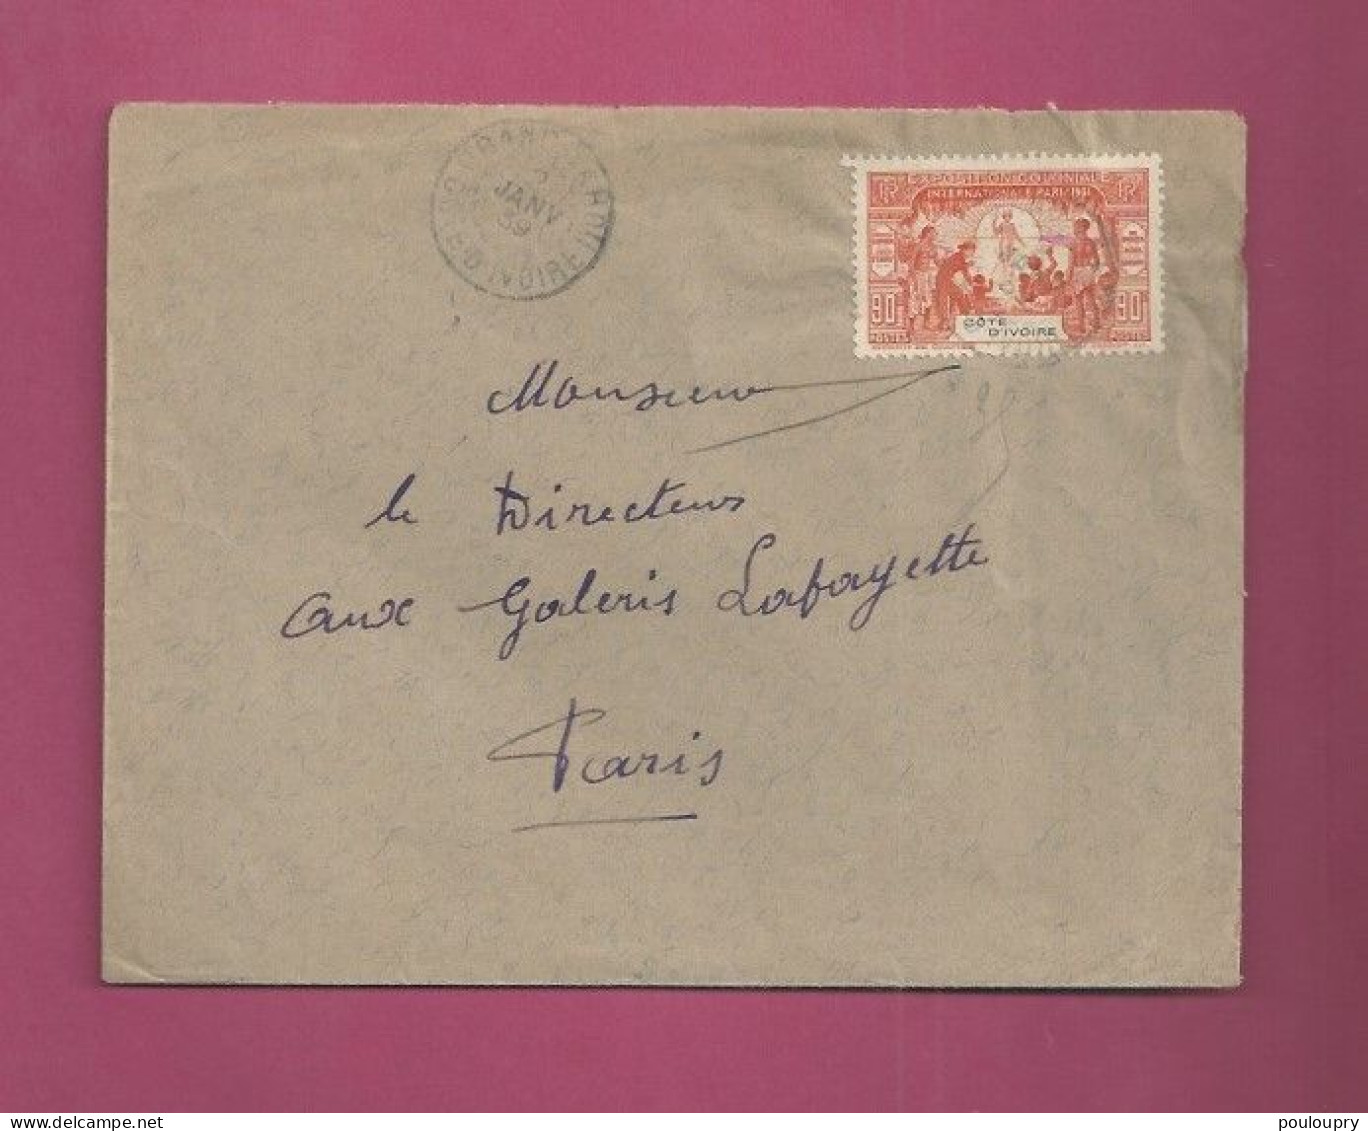 Lettre De 1939 Pour La France - YT N° 86 - Seul Sur Lettre - Exposition Coloniale De Paris - Lettres & Documents